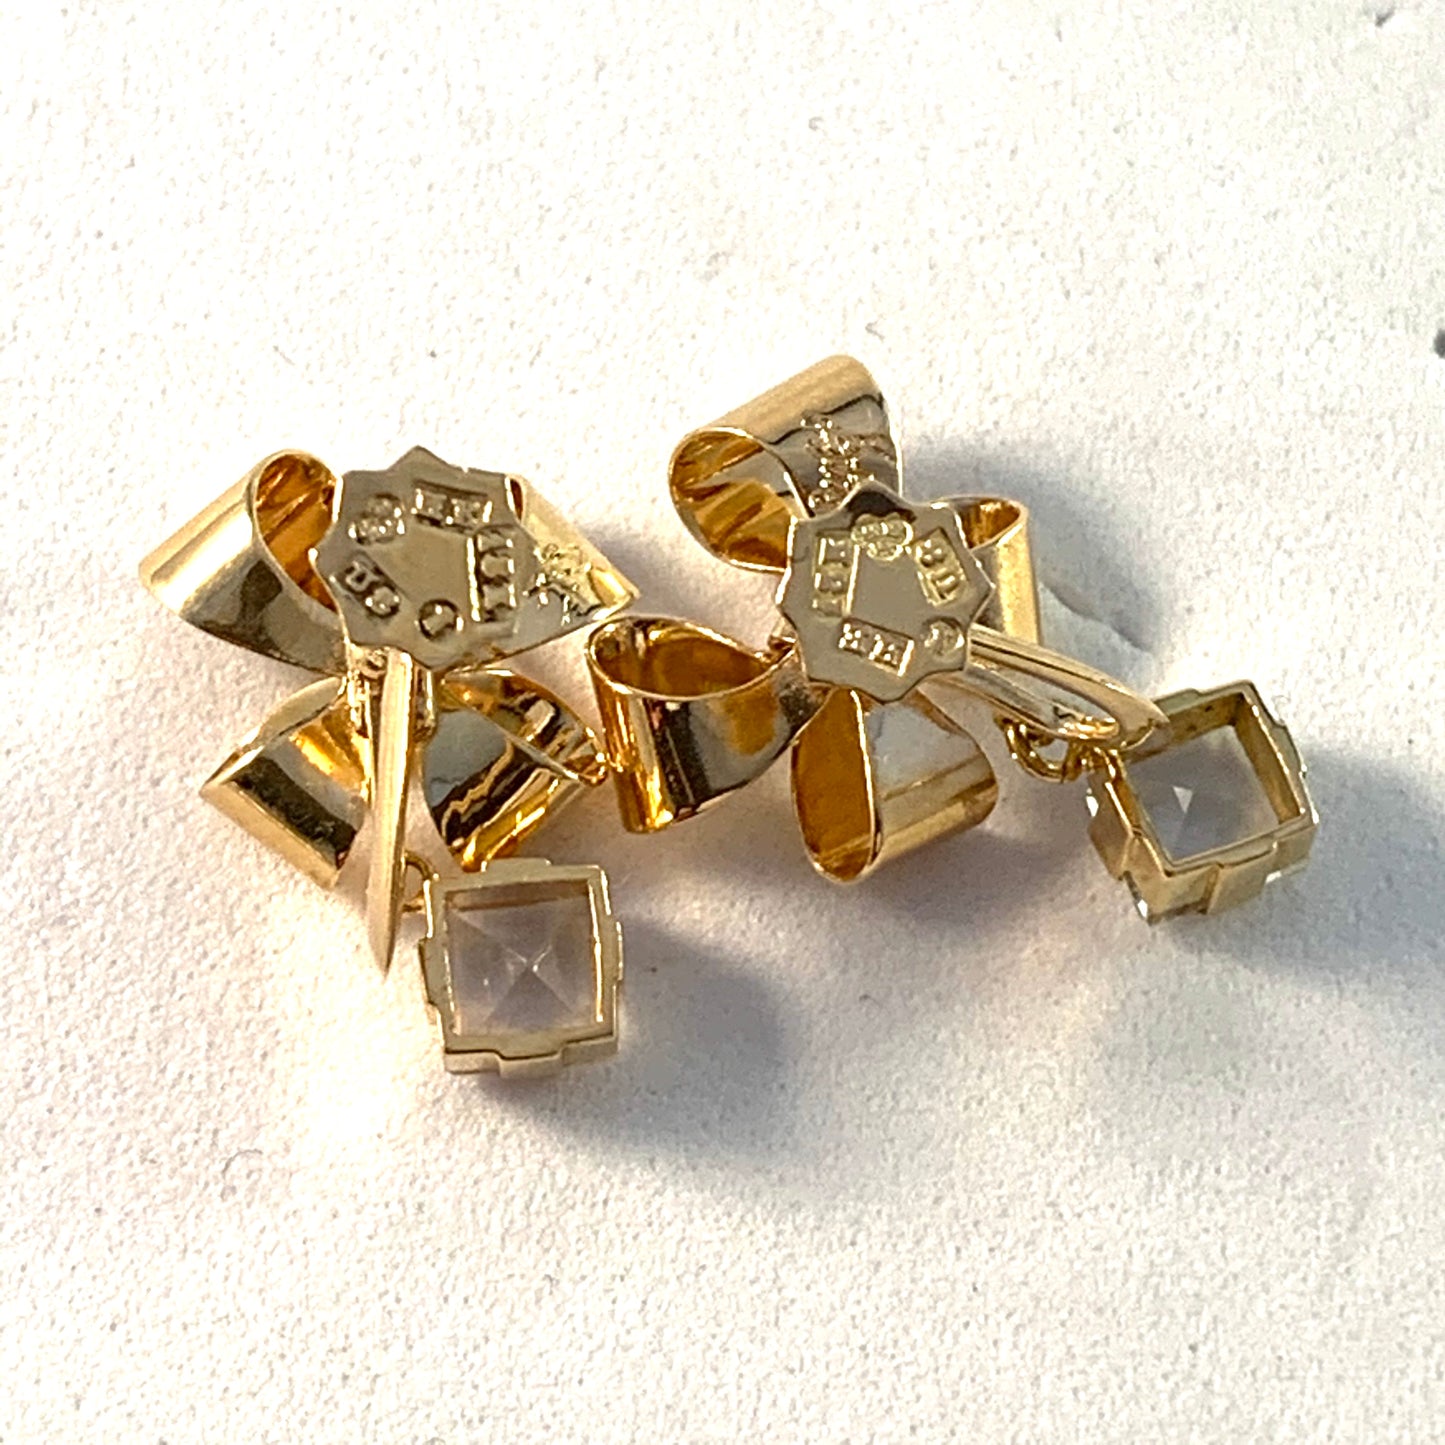 Stigbert, Sweden 1946 Mid Century 18k Gold Rock Crystal Earrings.